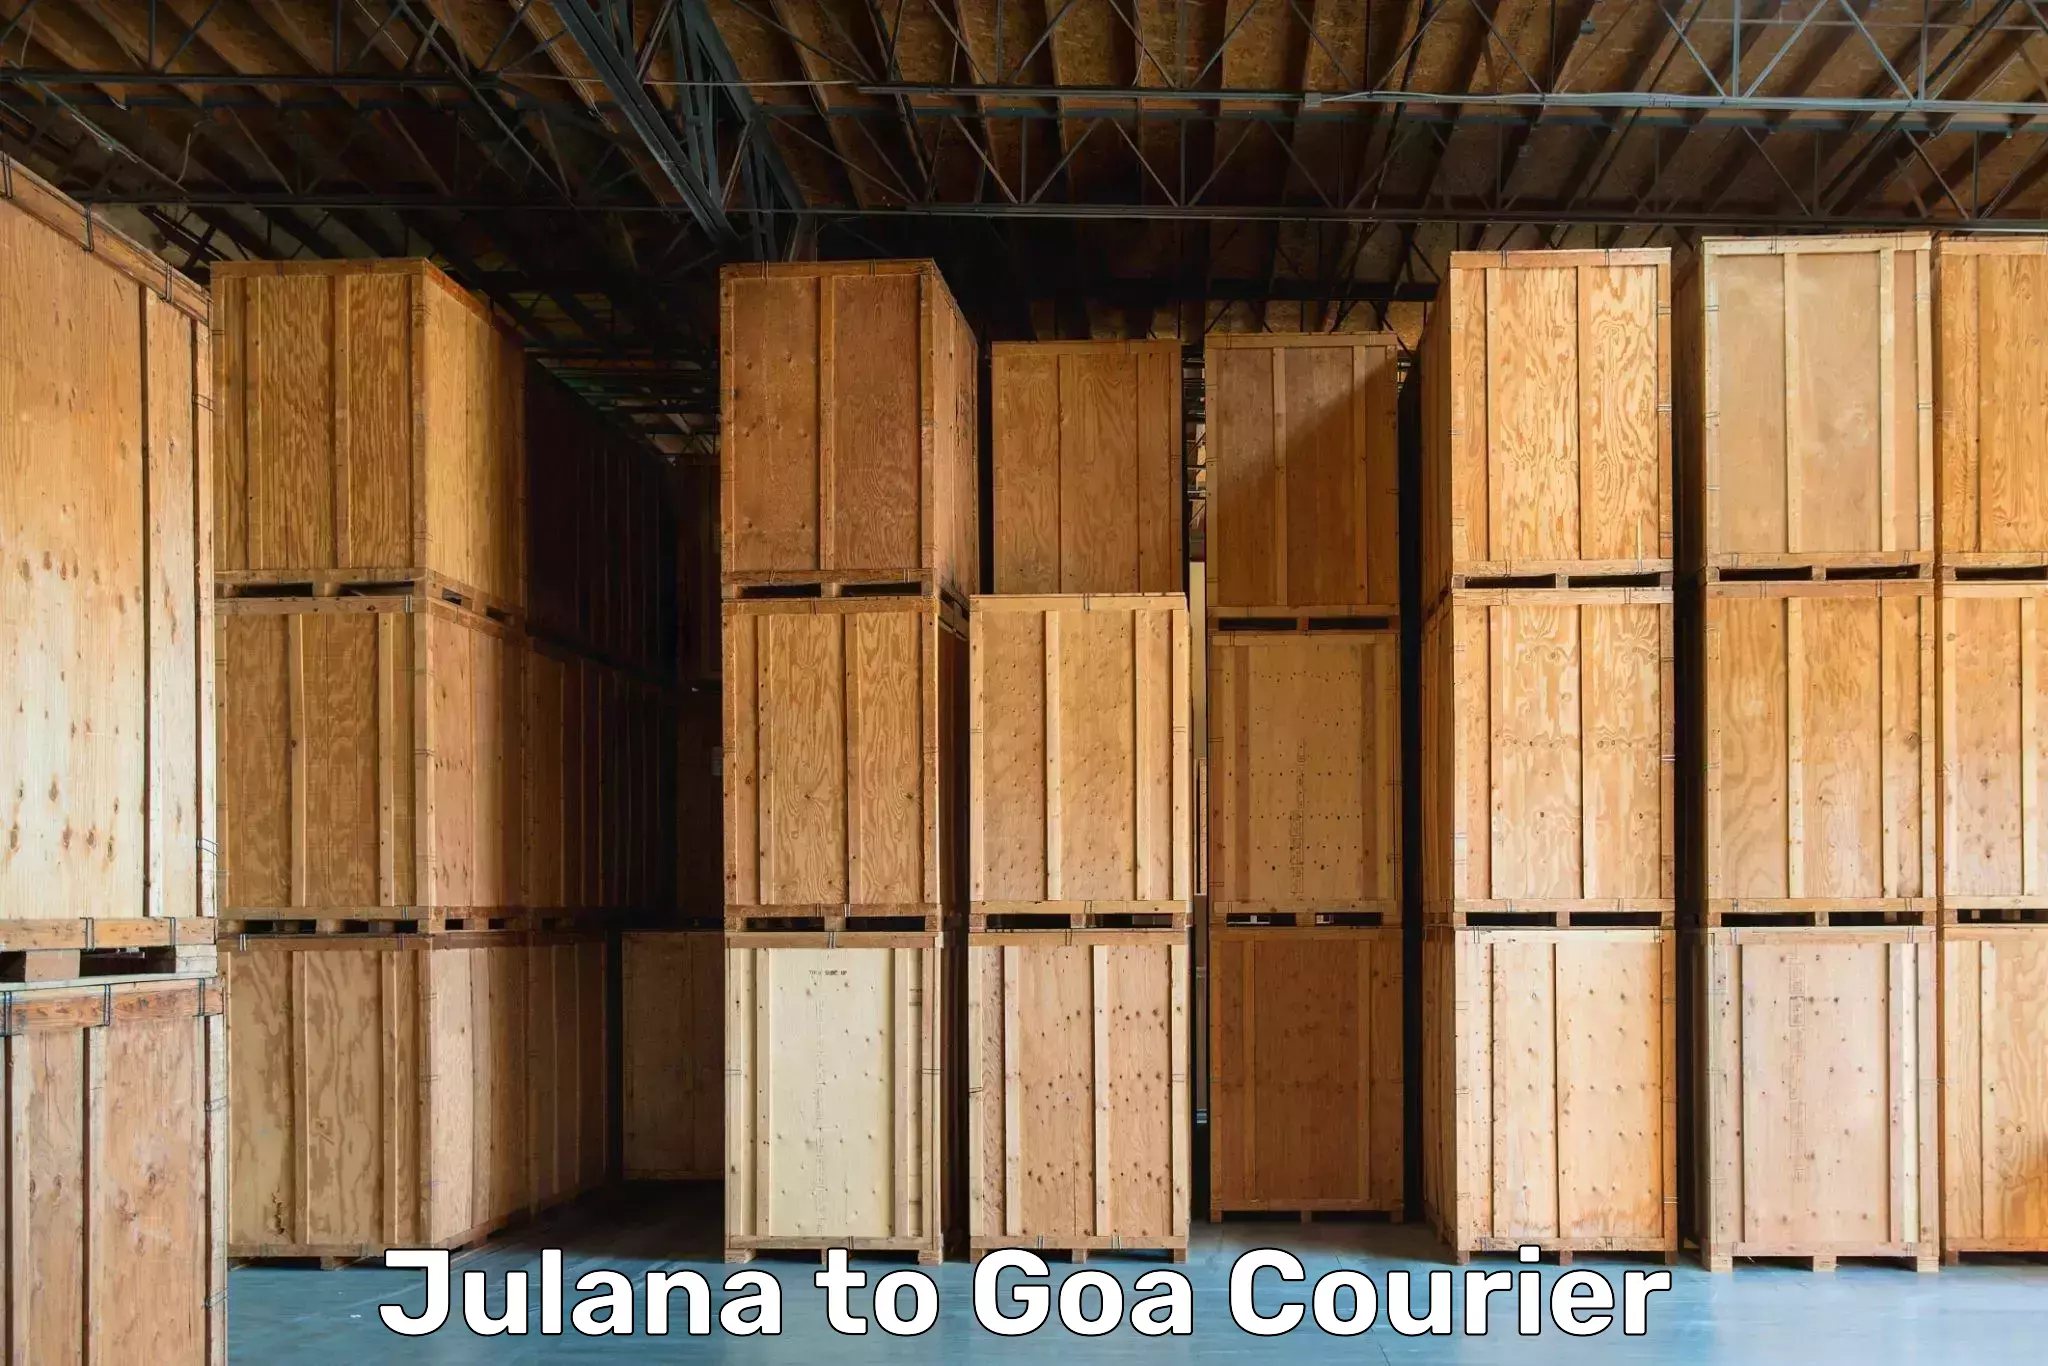 Trusted moving company Julana to Goa